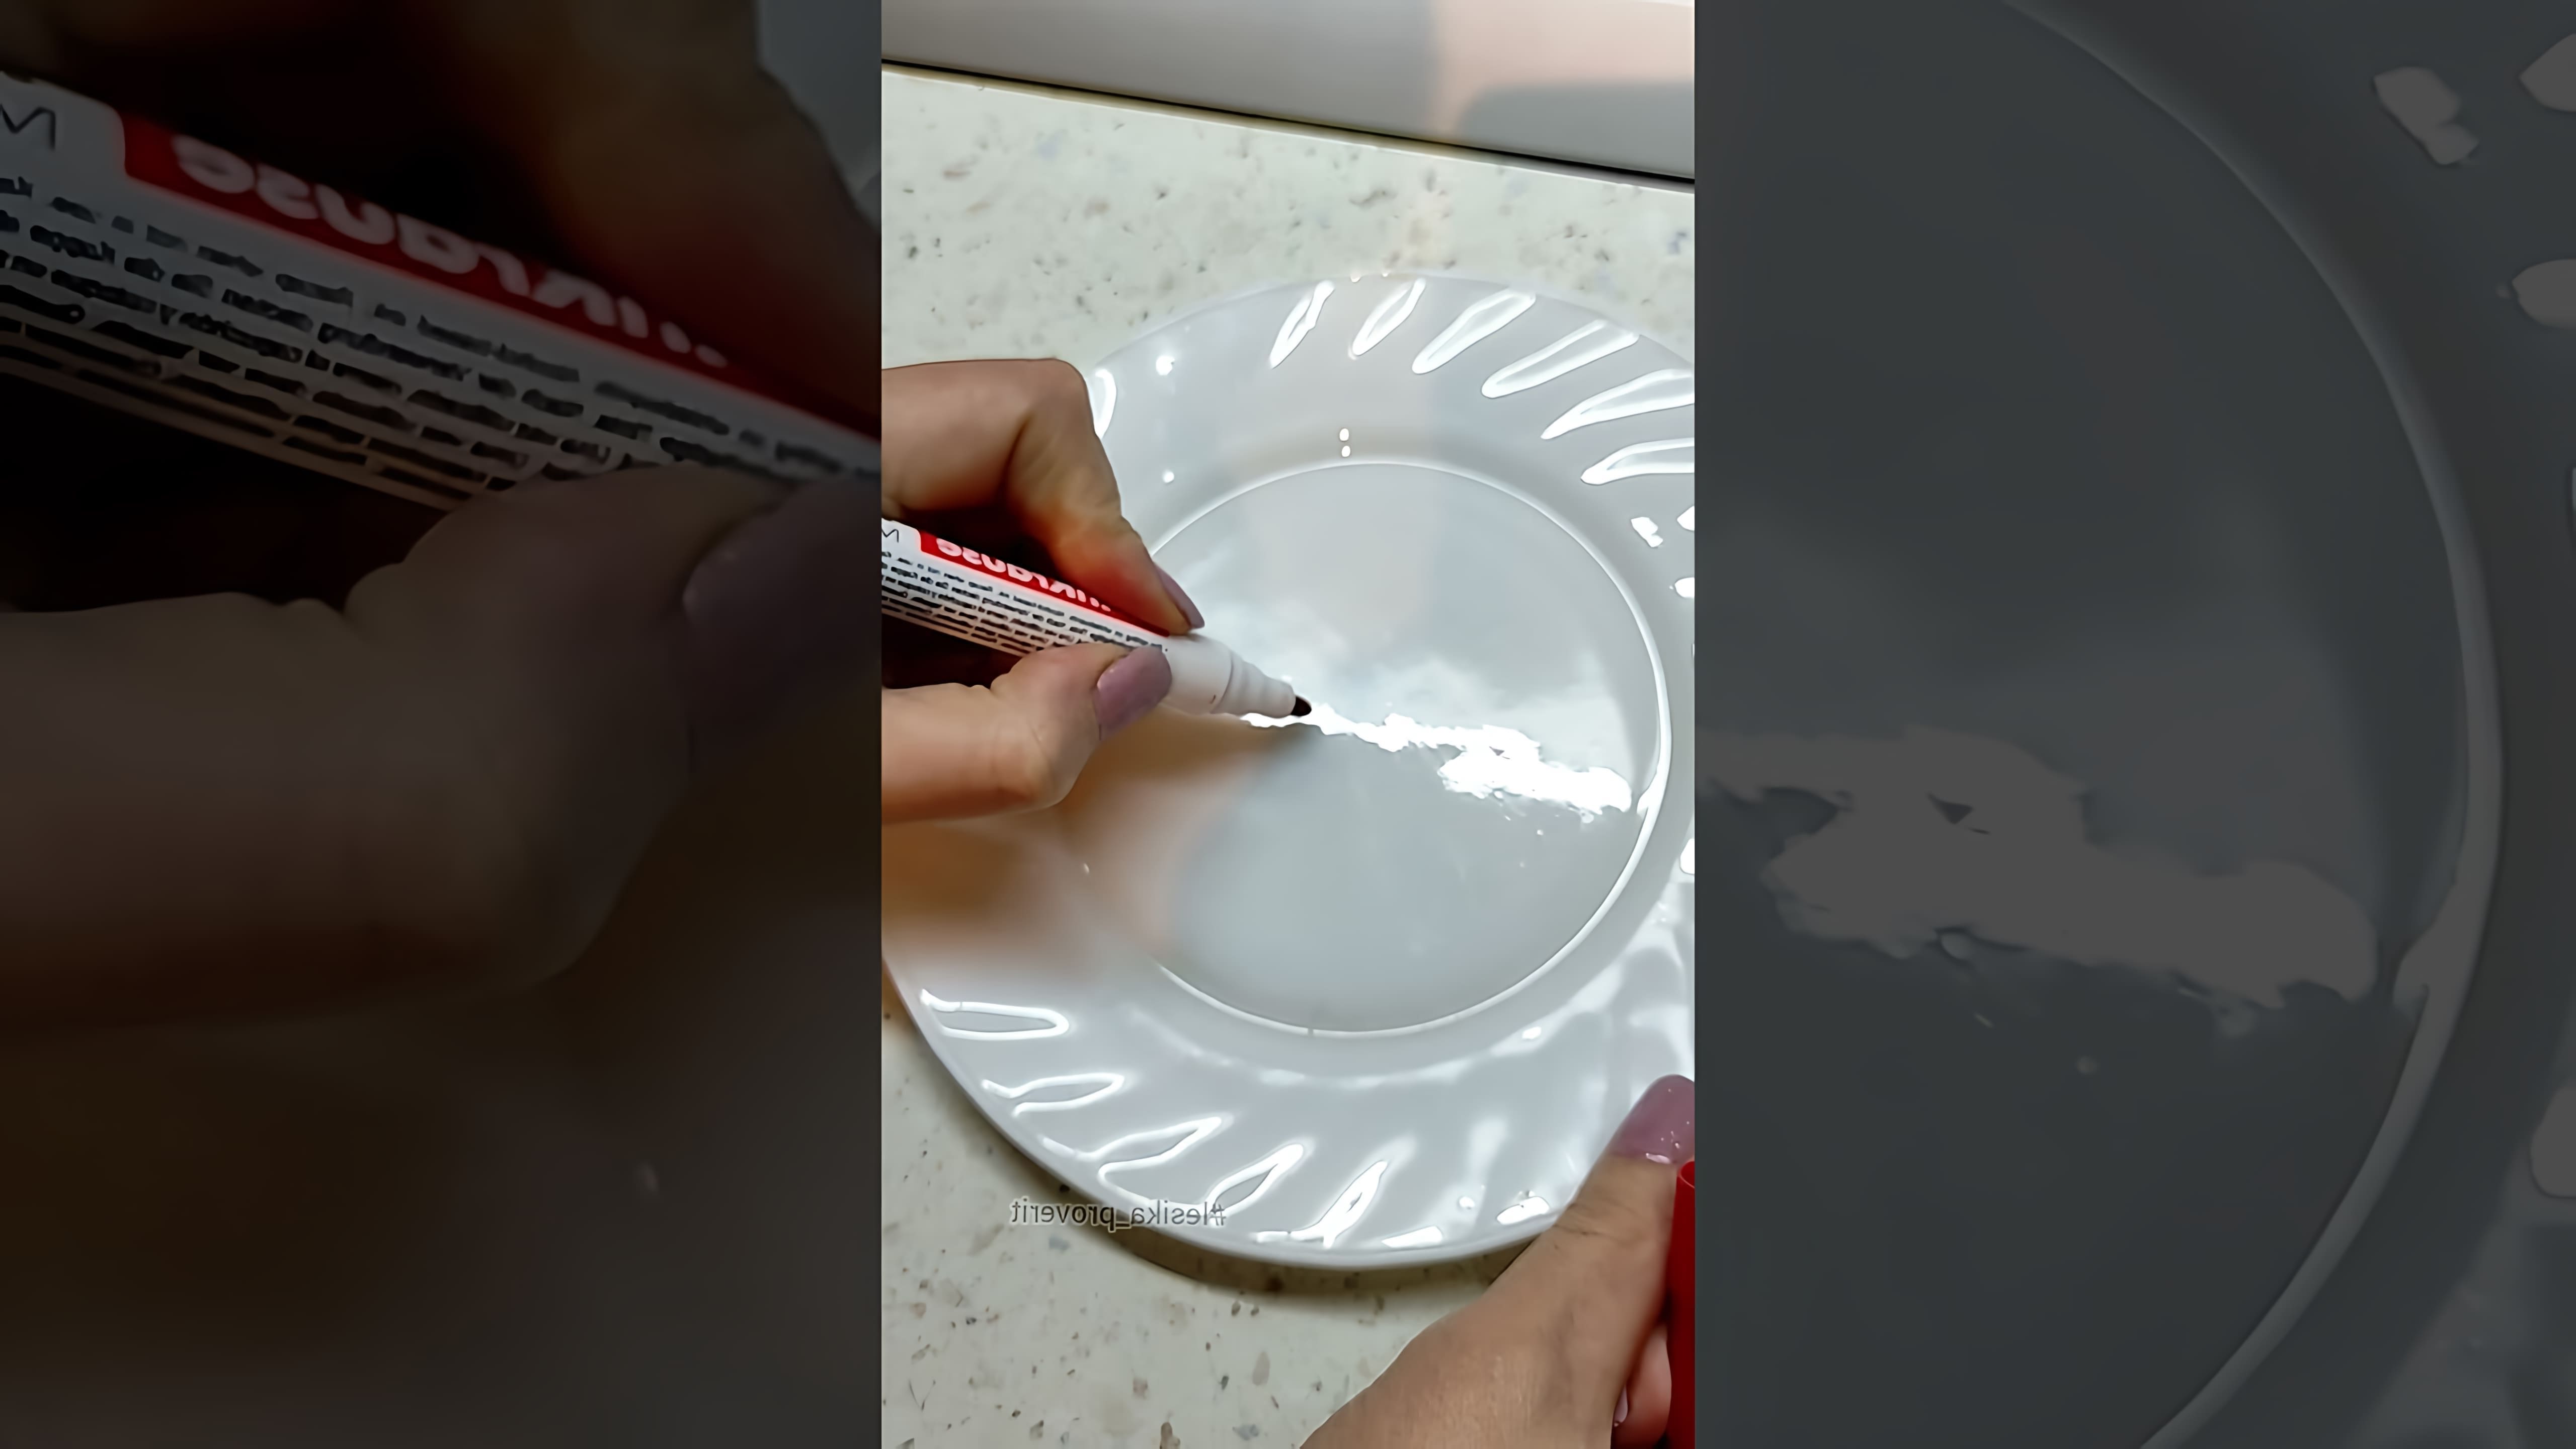 В этом видео демонстрируется проверка интернет-совета о том, что если нарисовать мастером цветочек и налить сверху воду, то он всплывет